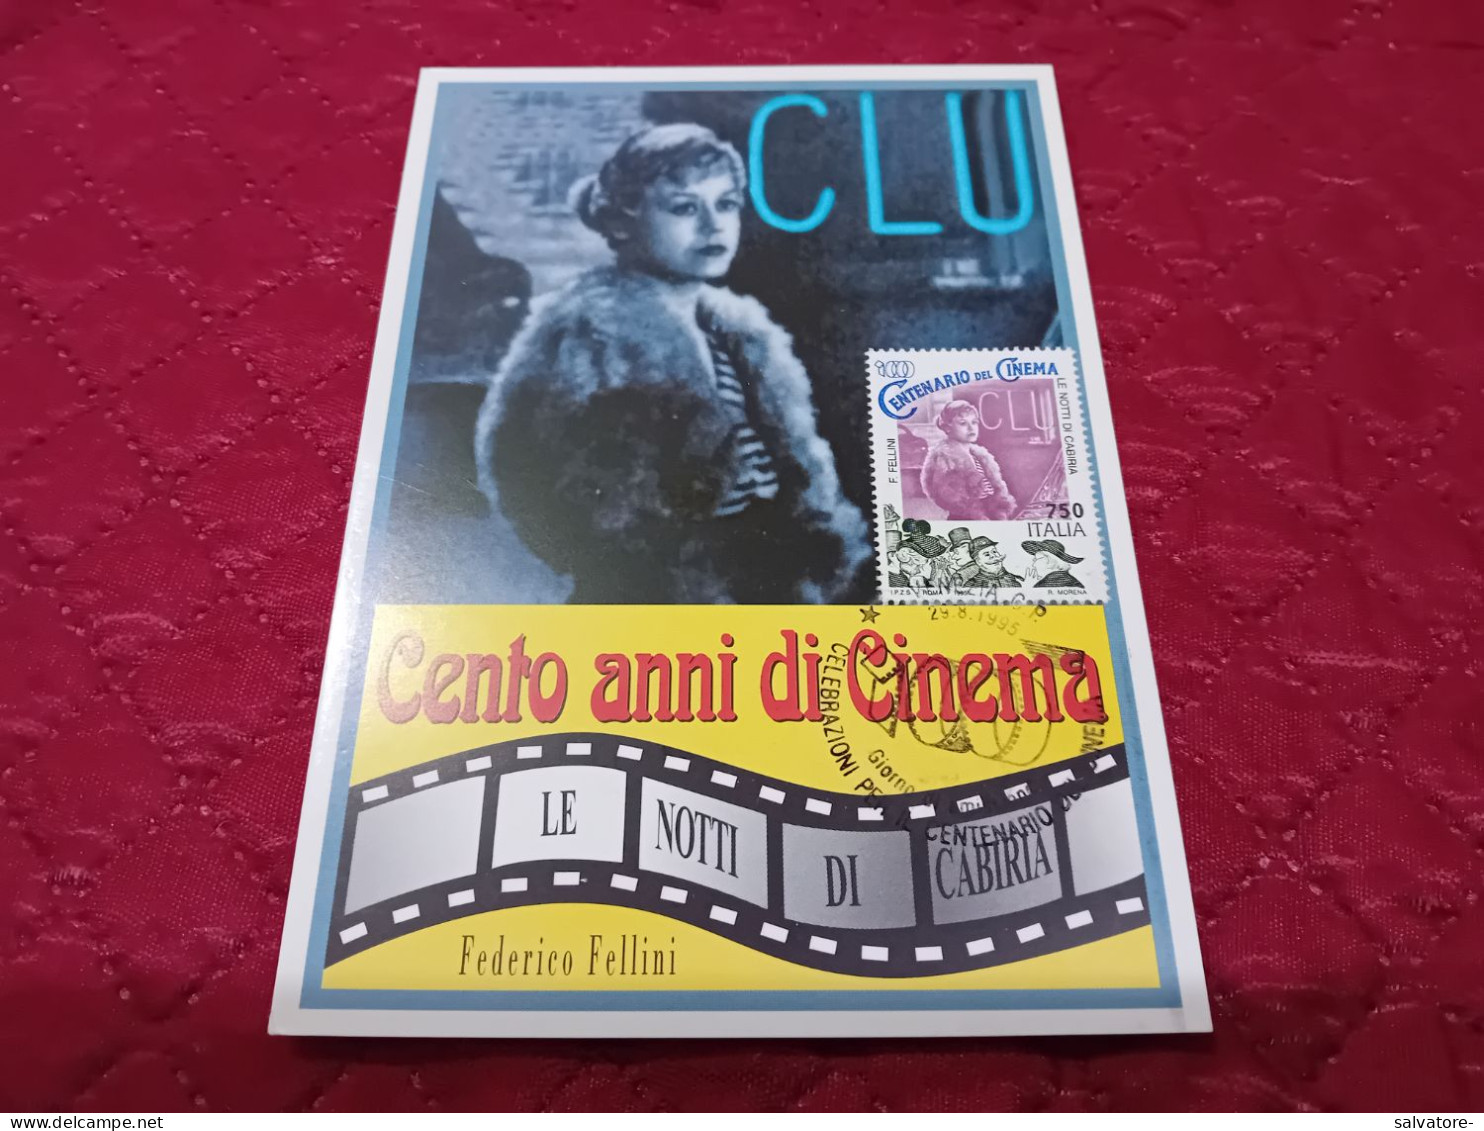 CARTOLINA CENTO ANNI DI CINEMA - Cinema Advertisement